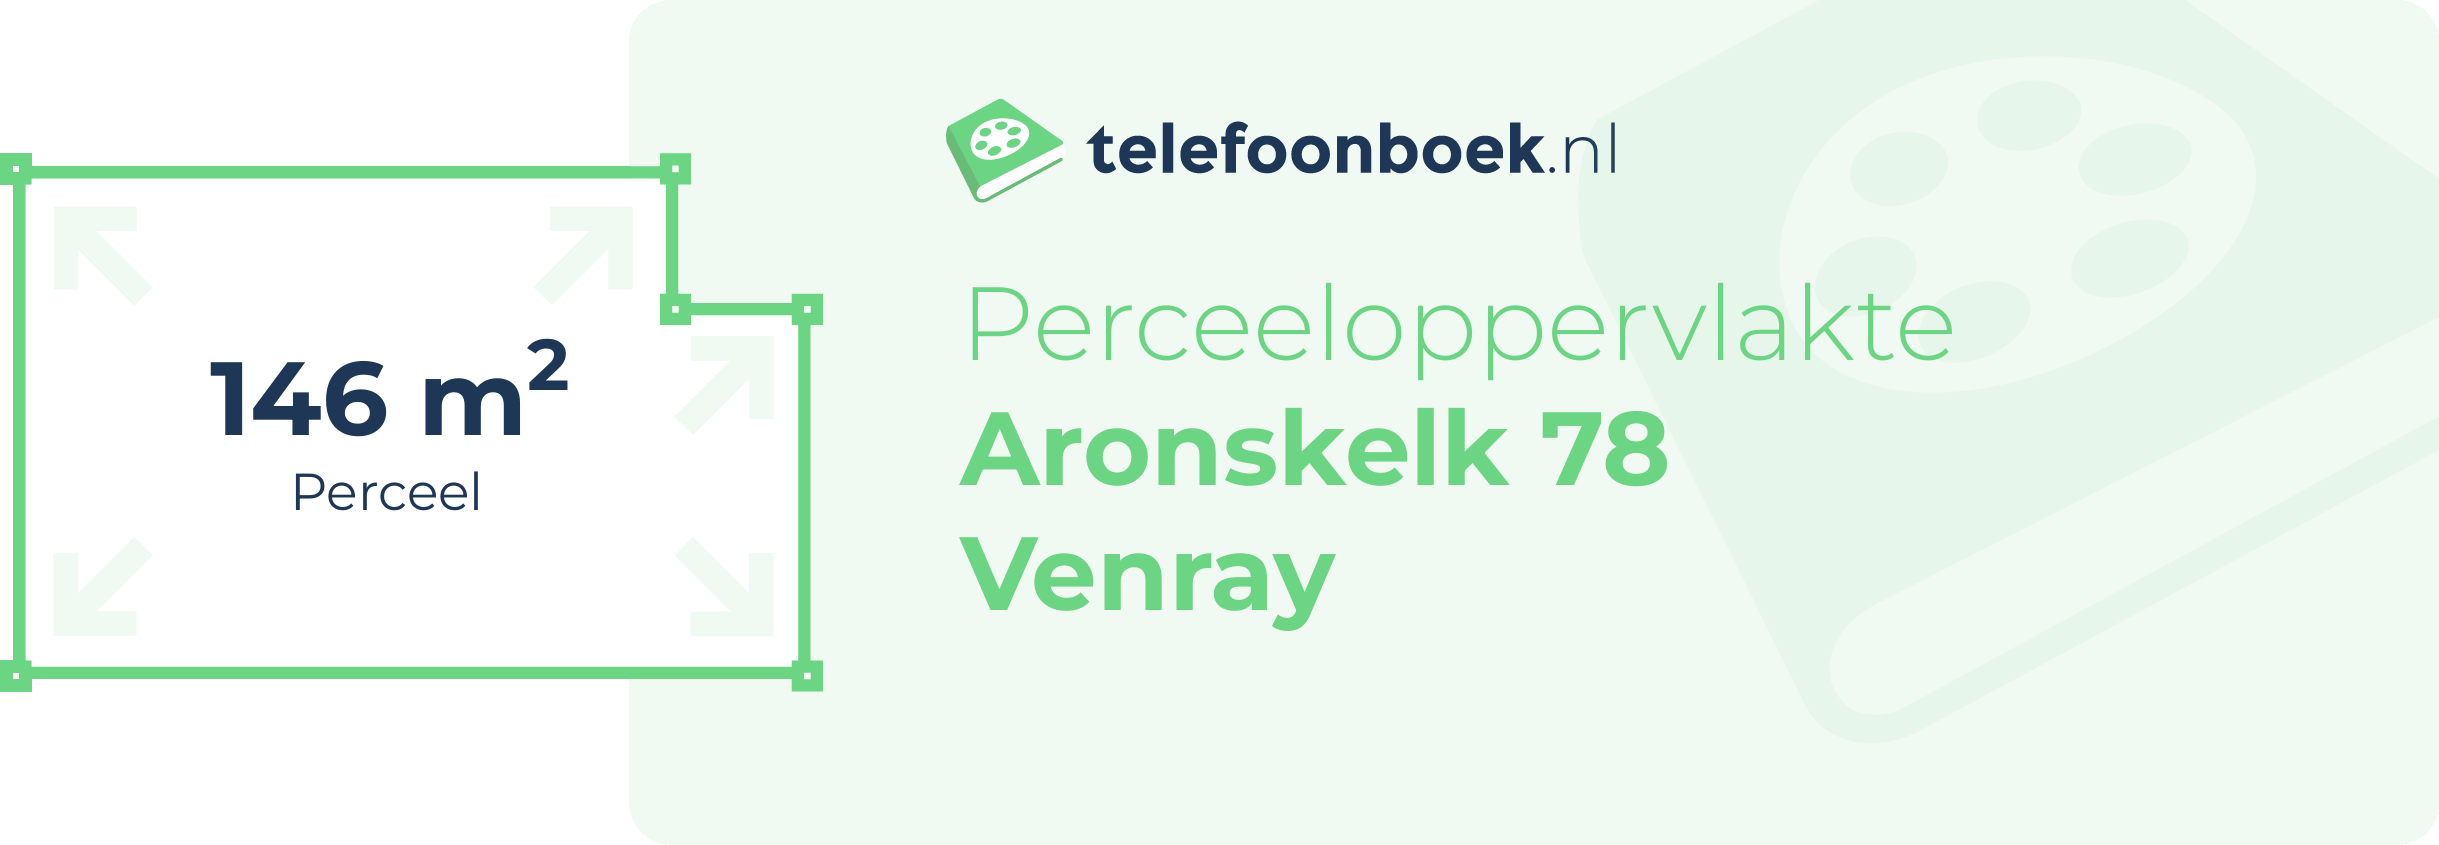 Perceeloppervlakte Aronskelk 78 Venray